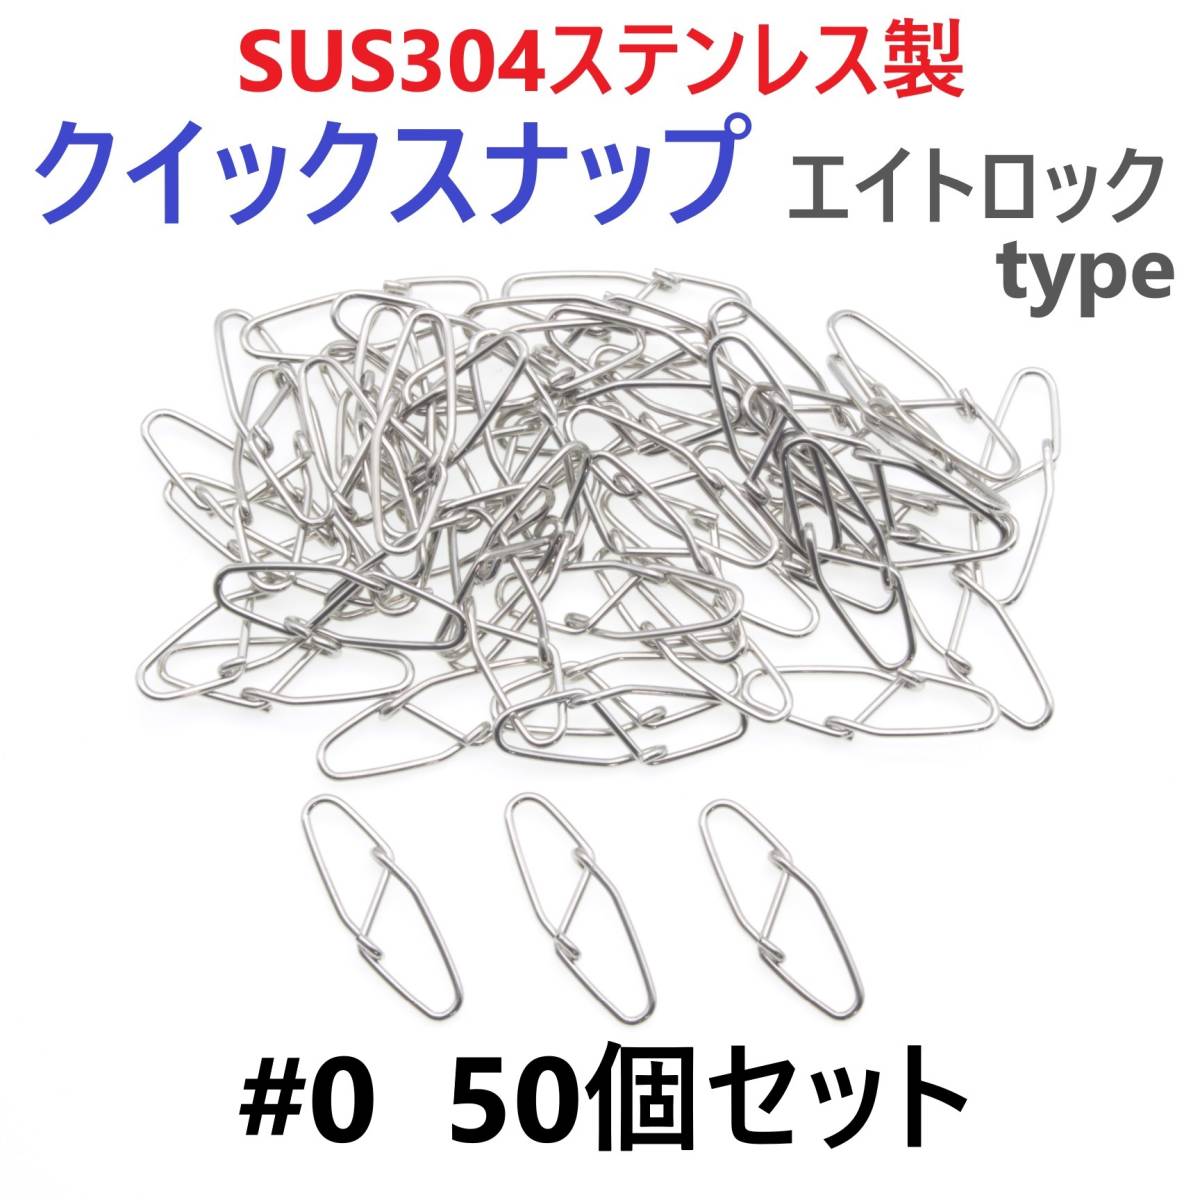 【送料無料】SUS304 ステンレス製 強力クイックスナップ エイトロックタイプ #0 50個セット 両開き ルアー 仕掛けに！ 防錆 スナップ_画像1